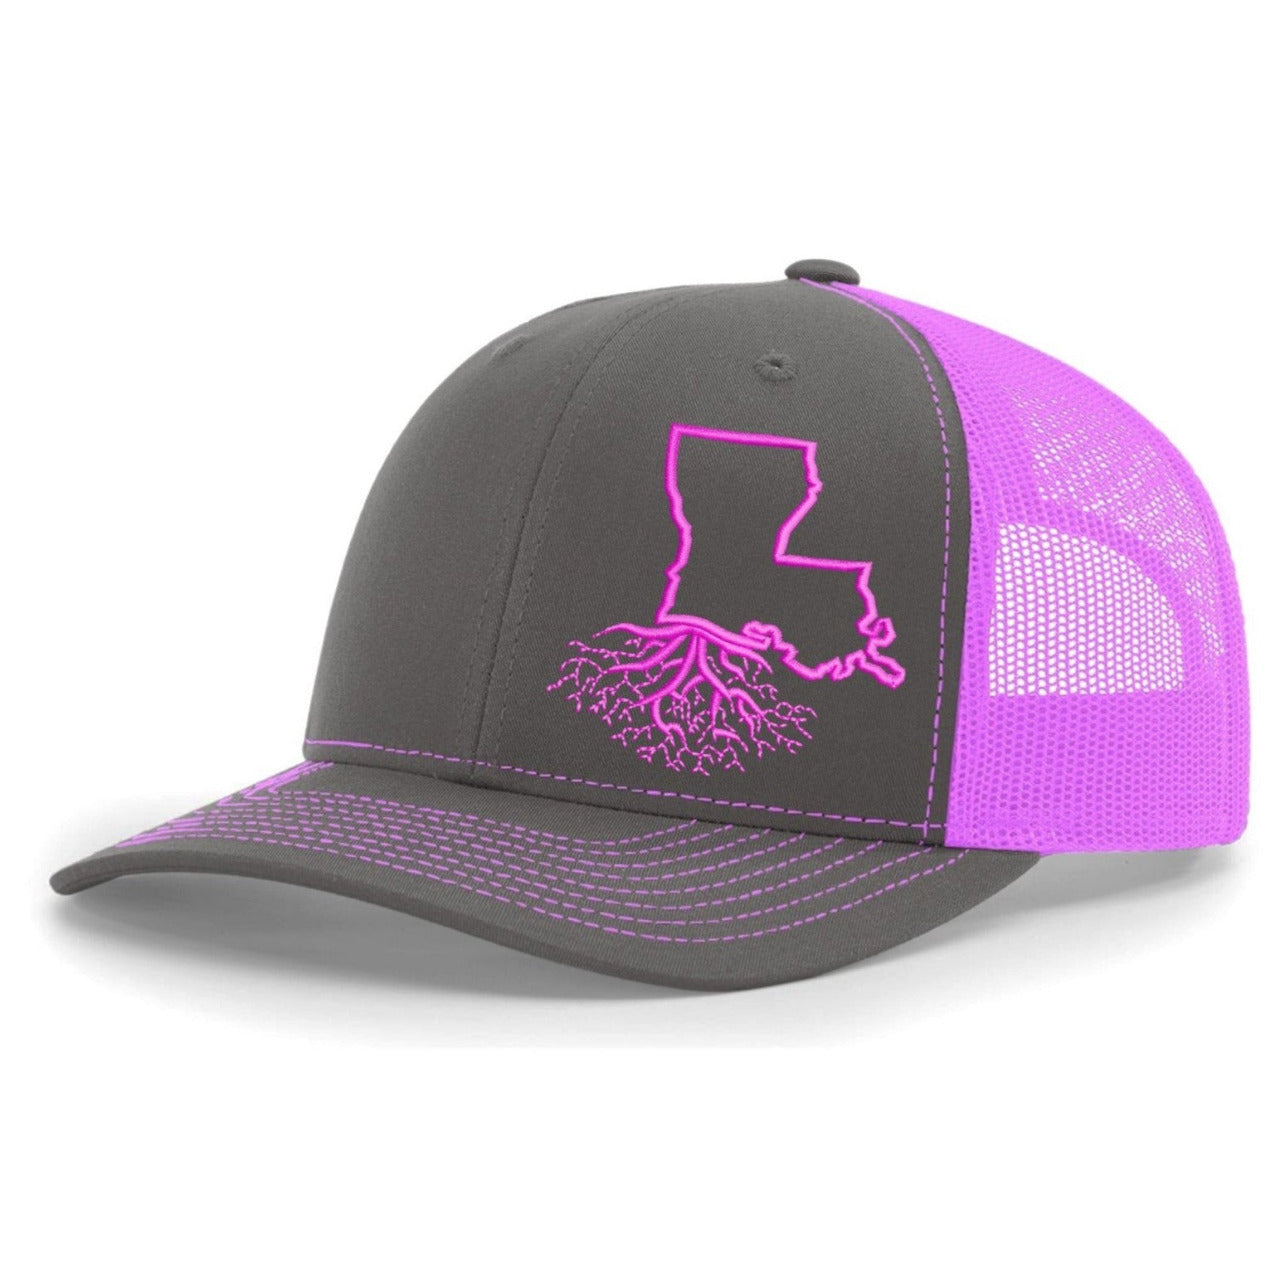 
                  
                    Louisiana Snapback Trucker - Hats
                  
                